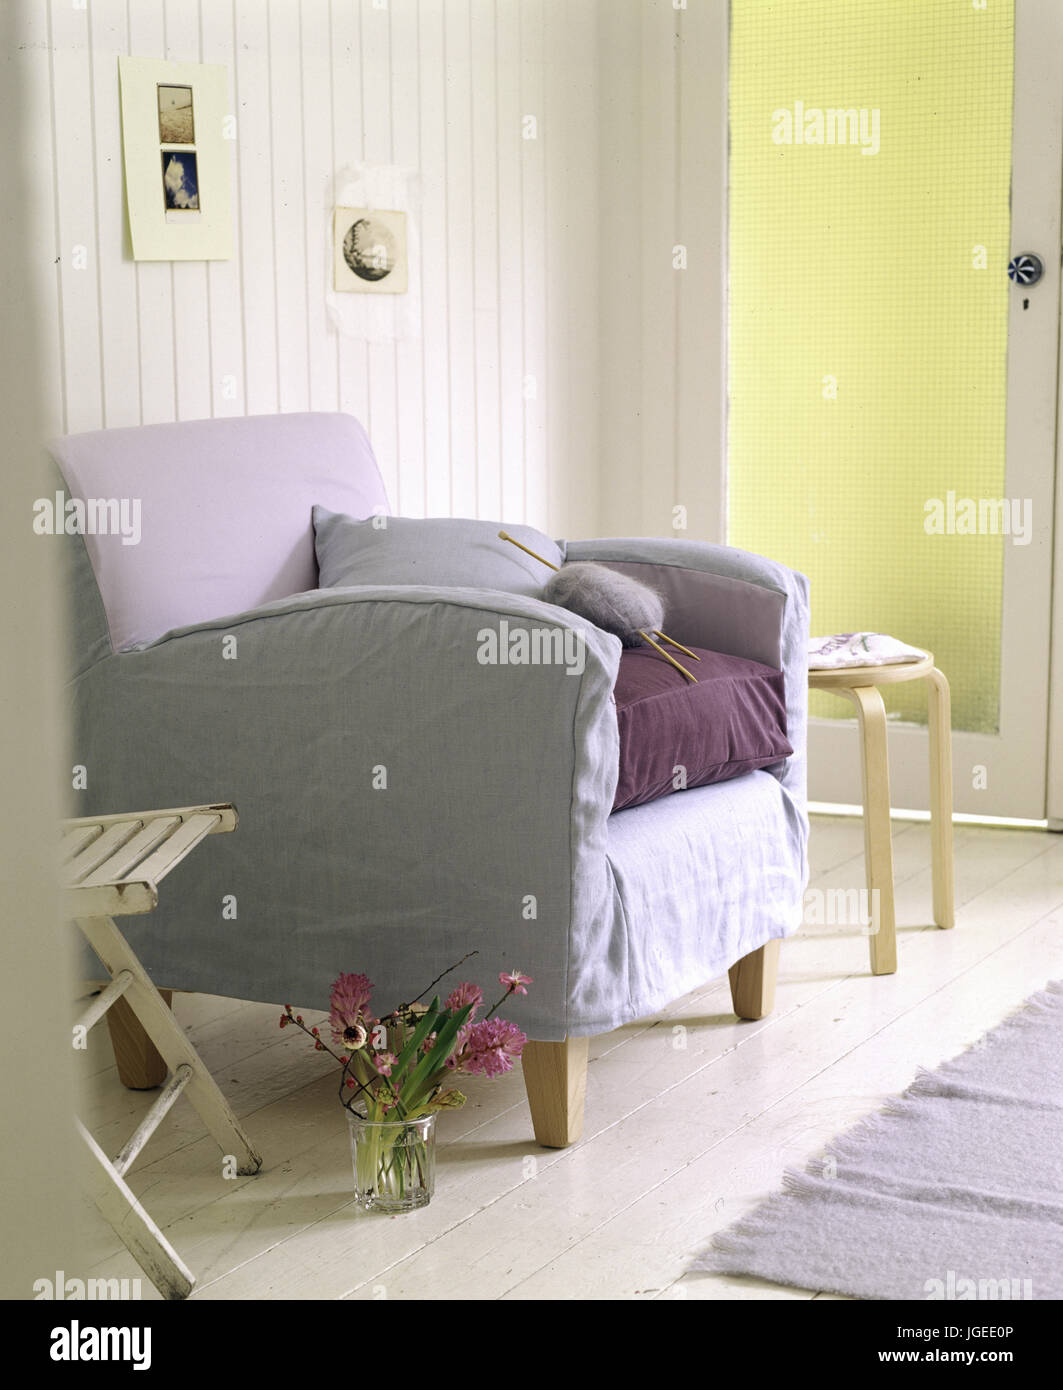 Viola pallido coperchio allentato sulla poltrona nella moderna sala soggiorno Foto Stock